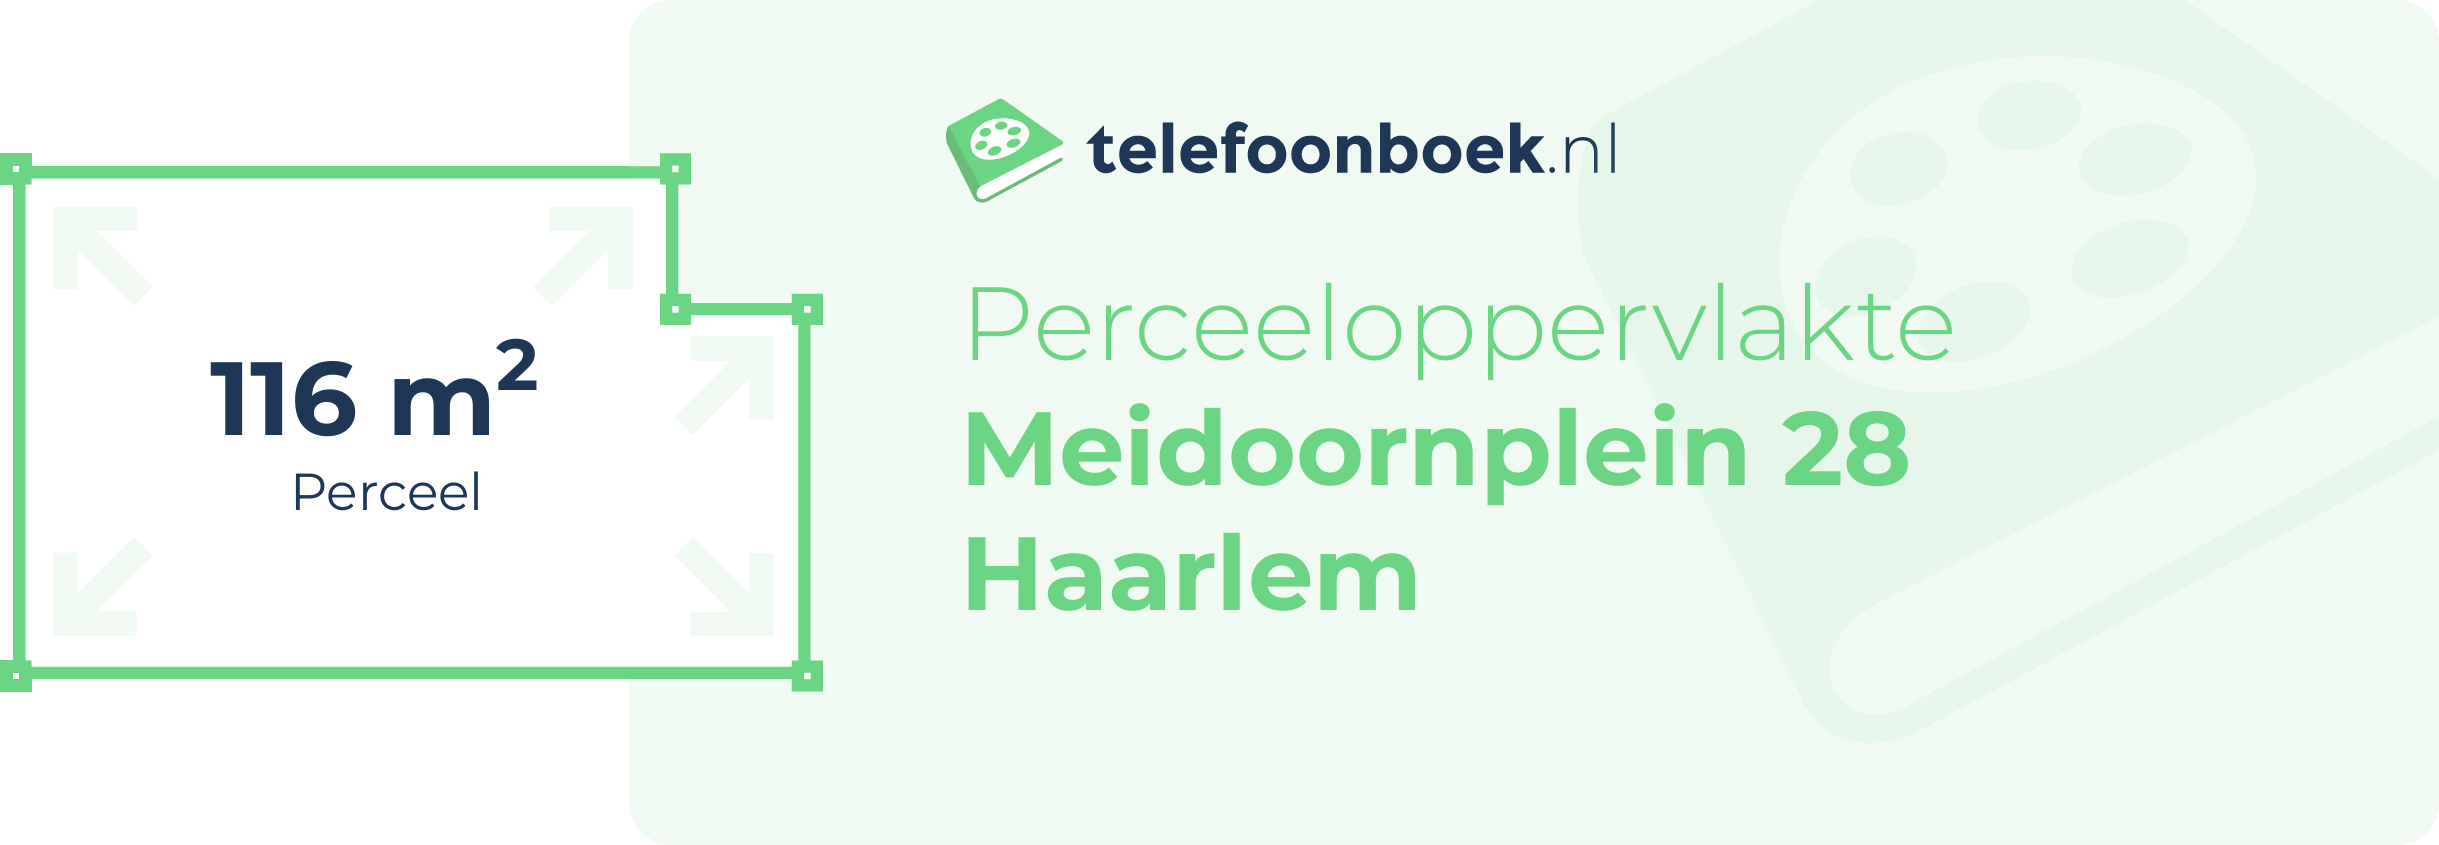 Perceeloppervlakte Meidoornplein 28 Haarlem